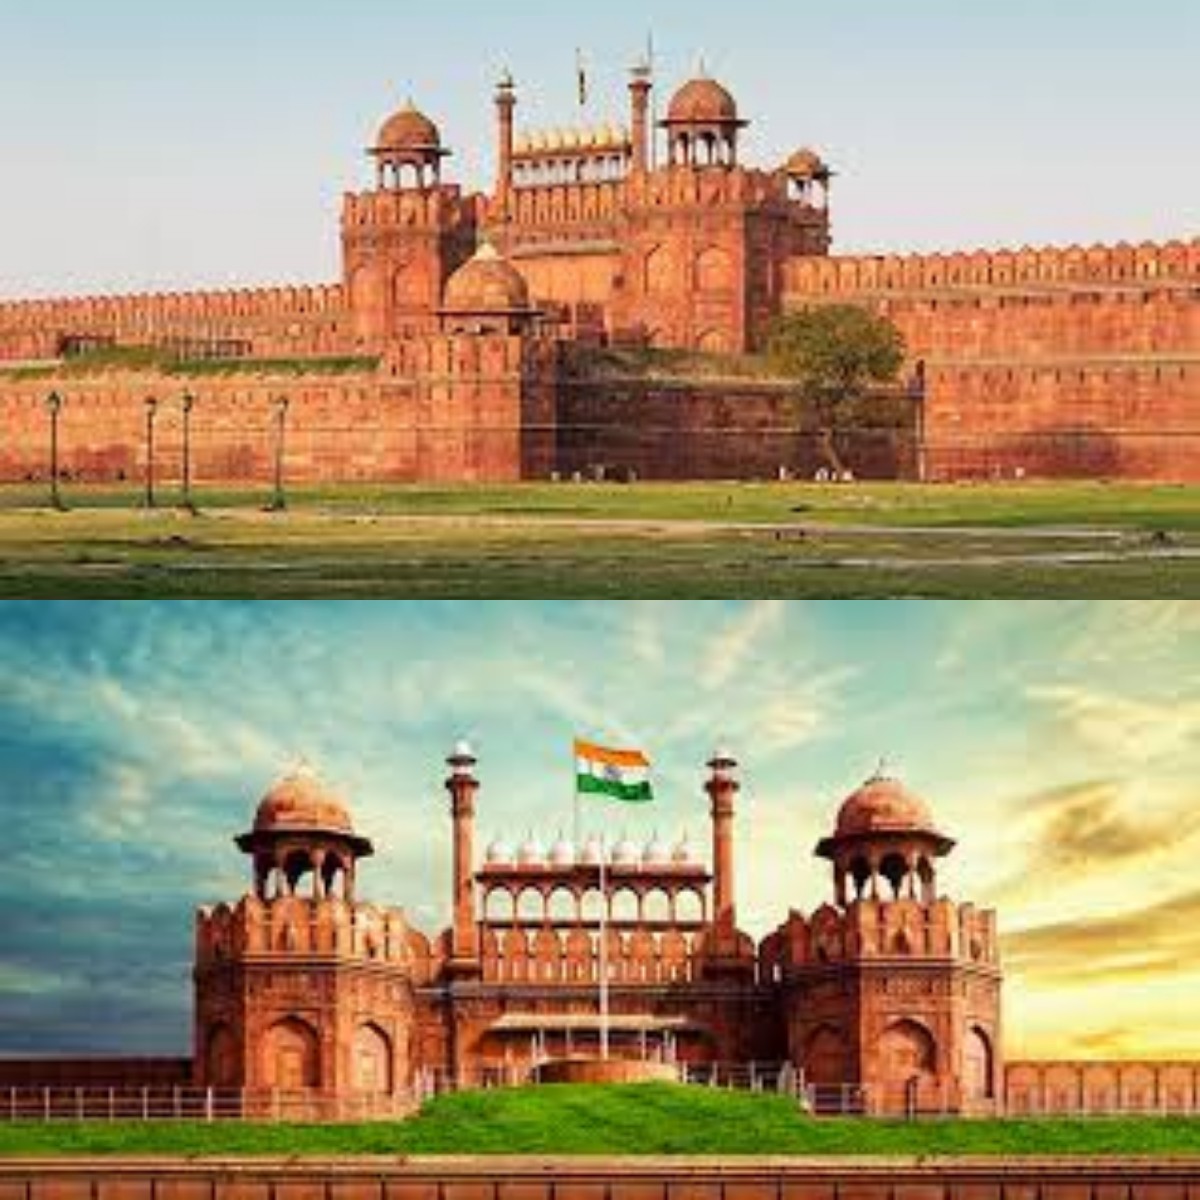 Simbol Negara: Mengungkap Jejak Sejarah Benteng Merah Perkasa New Delhi